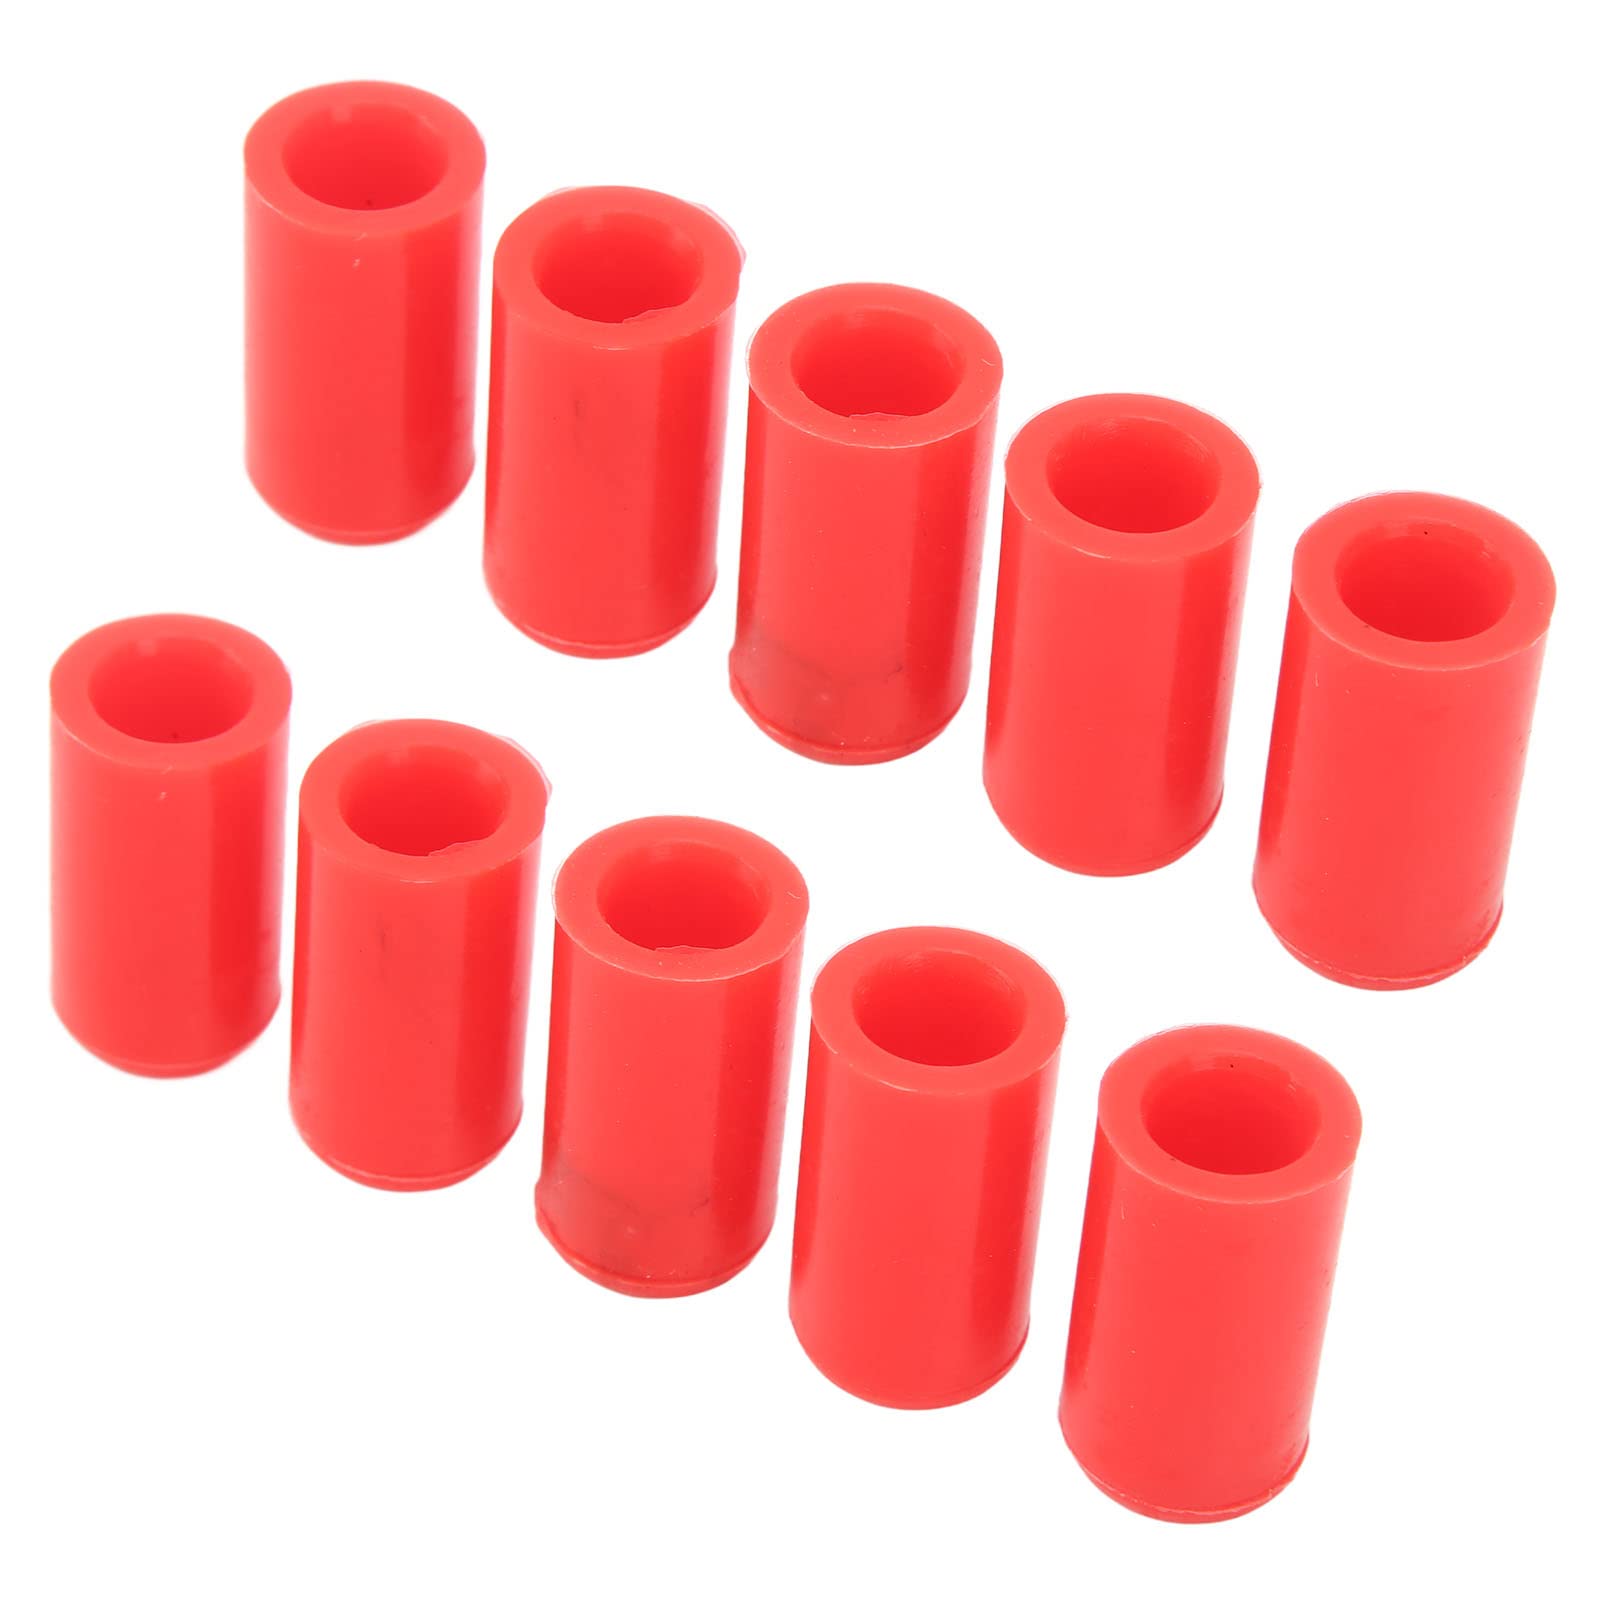 Automotive Line Schlauchkappe 10 Stück 10 Mm Automotive Vakuumschlauchkappe Silikon Wasserdicht Ozonbeständig Flexibler Einlass-Vakuumschlauch-Endstopfen (Rot) von Aramox